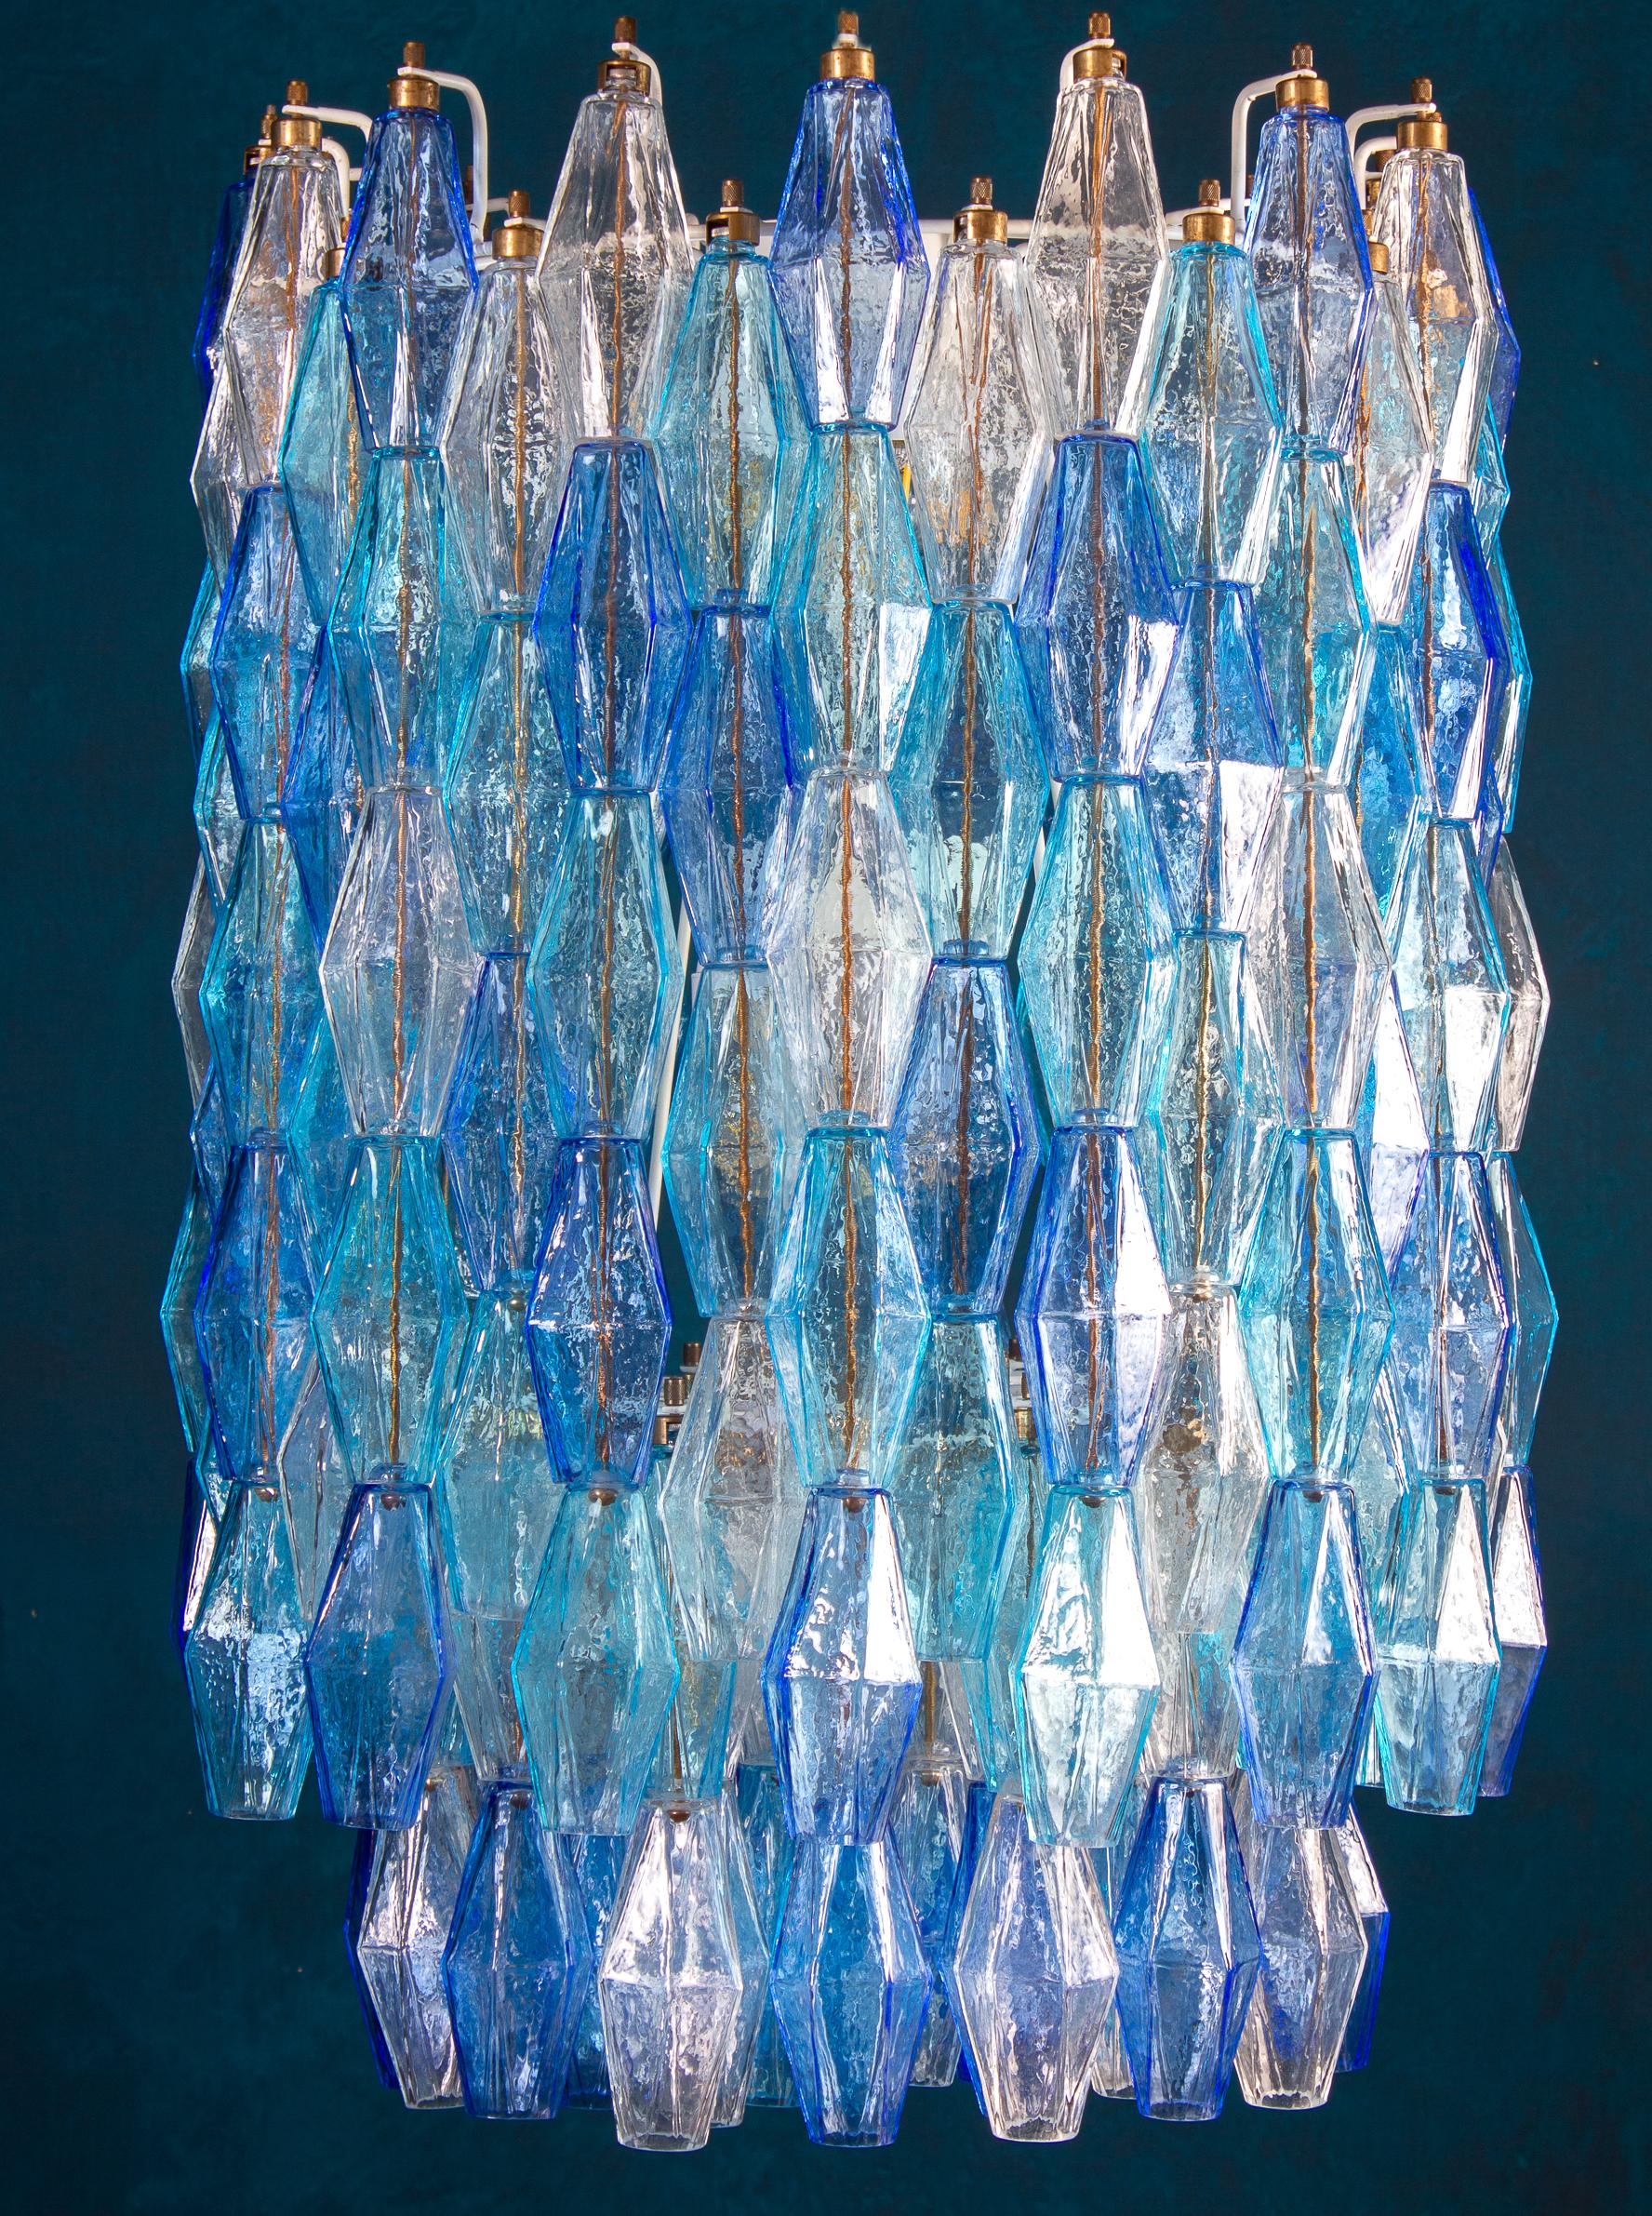 Ce fantastique lustre est composé d'environ 200 verres Poliedri colorés de Murano.
Variation de couleur du saphir avec le précieux Poliedri céleste et aigue-marine.
Mesures : Hauteur sans la chaîne et le baldaquin 88 cm (35inches). Avec chaîne et